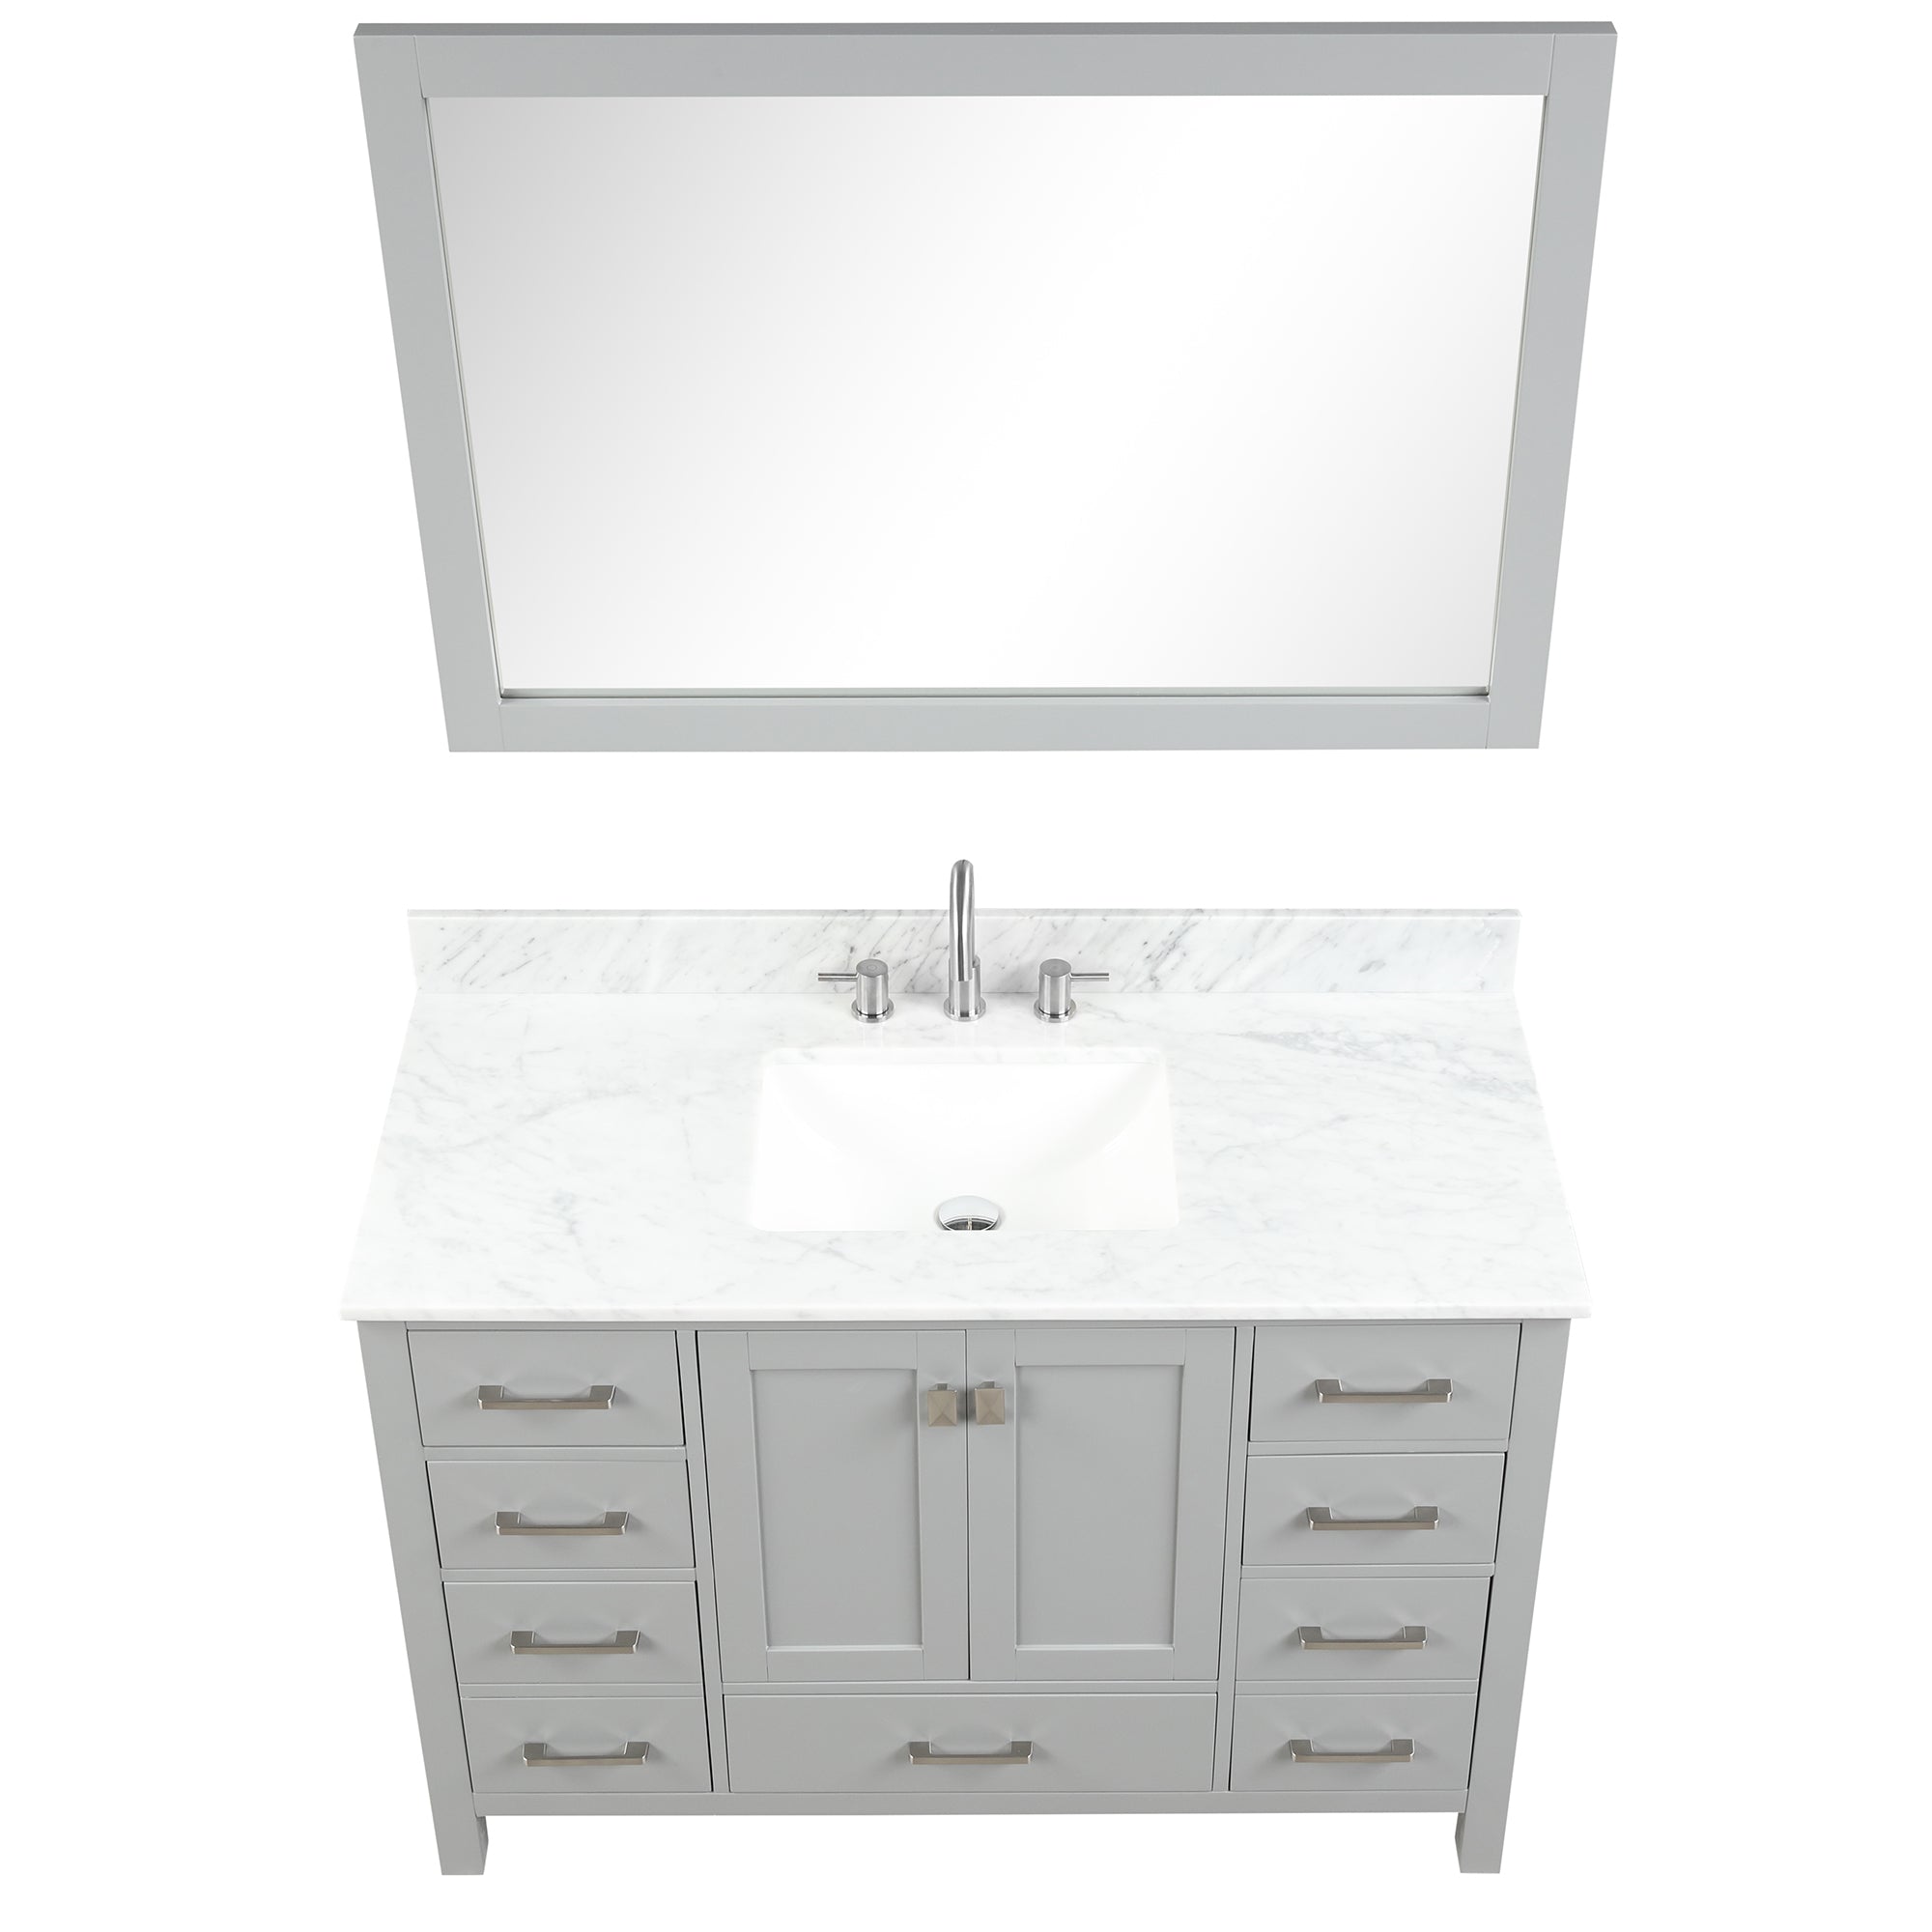 Geneva 48" Bathroom Vanity with Marble Countertop - Contemporary Bathroom Vanity